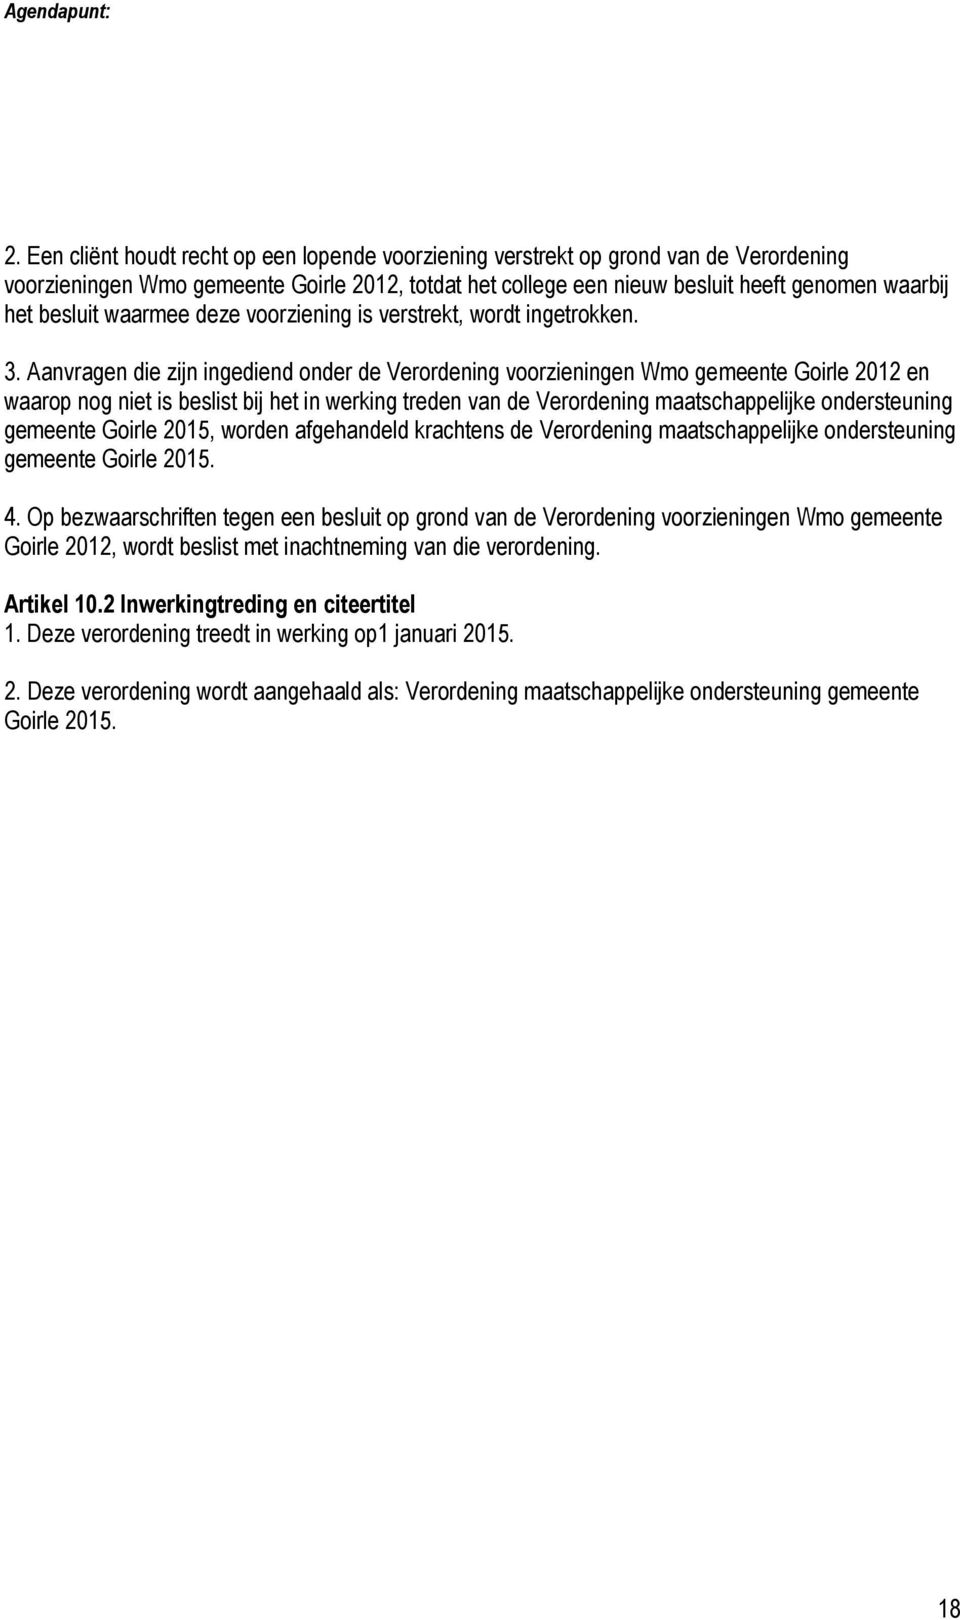 Aanvragen die zijn ingediend onder de Verordening voorzieningen Wmo gemeente Goirle 2012 en waarop nog niet is beslist bij het in werking treden van de Verordening maatschappelijke ondersteuning